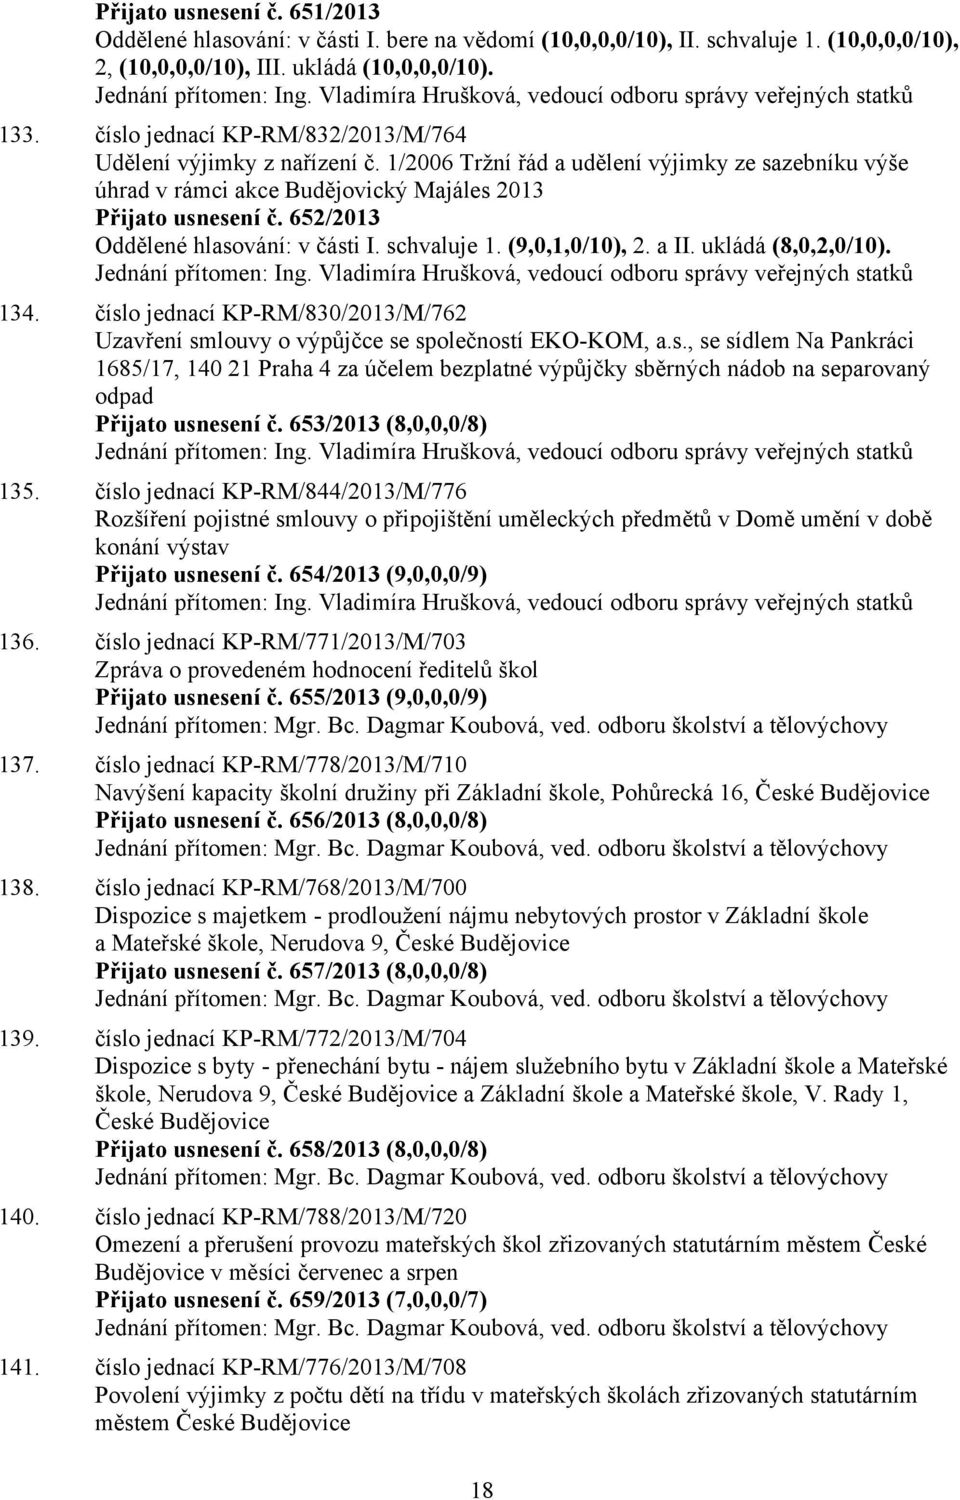 1/2006 Tržní řád a udělení výjimky ze sazebníku výše úhrad v rámci akce Budějovický Majáles 2013 Přijato usnesení č. 652/2013 Oddělené hlasování: v části 1. (9,0,1,0/10), 2. a (8,0,2,0/10).